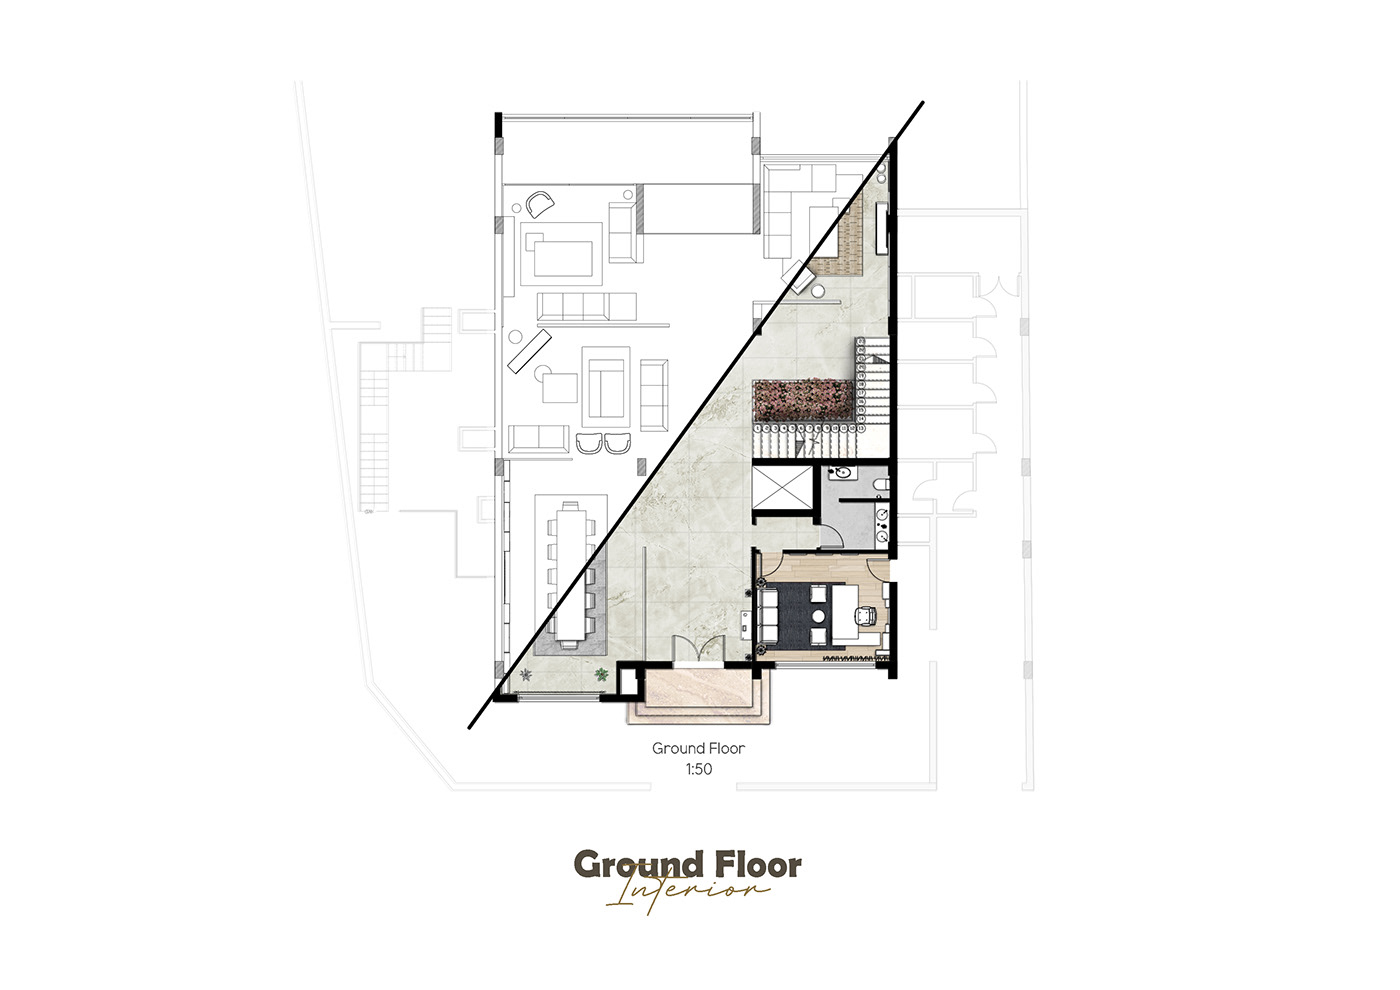 architecture Interior interior design  modern office furniture Plan Render vray floor plan luxury